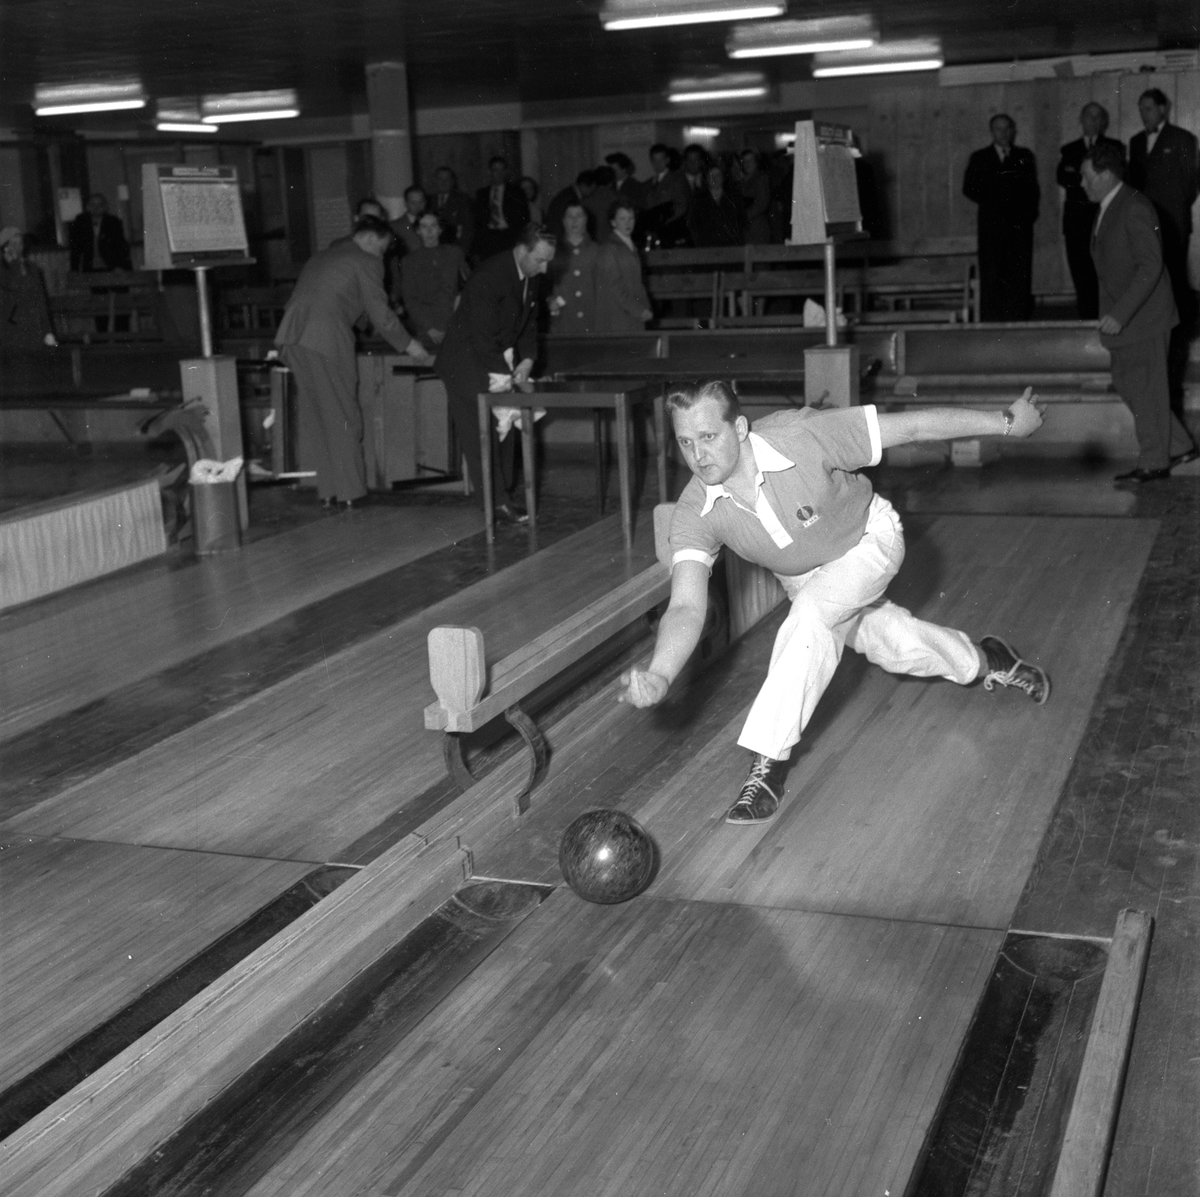 BSM i bowling.
Maj 1956.